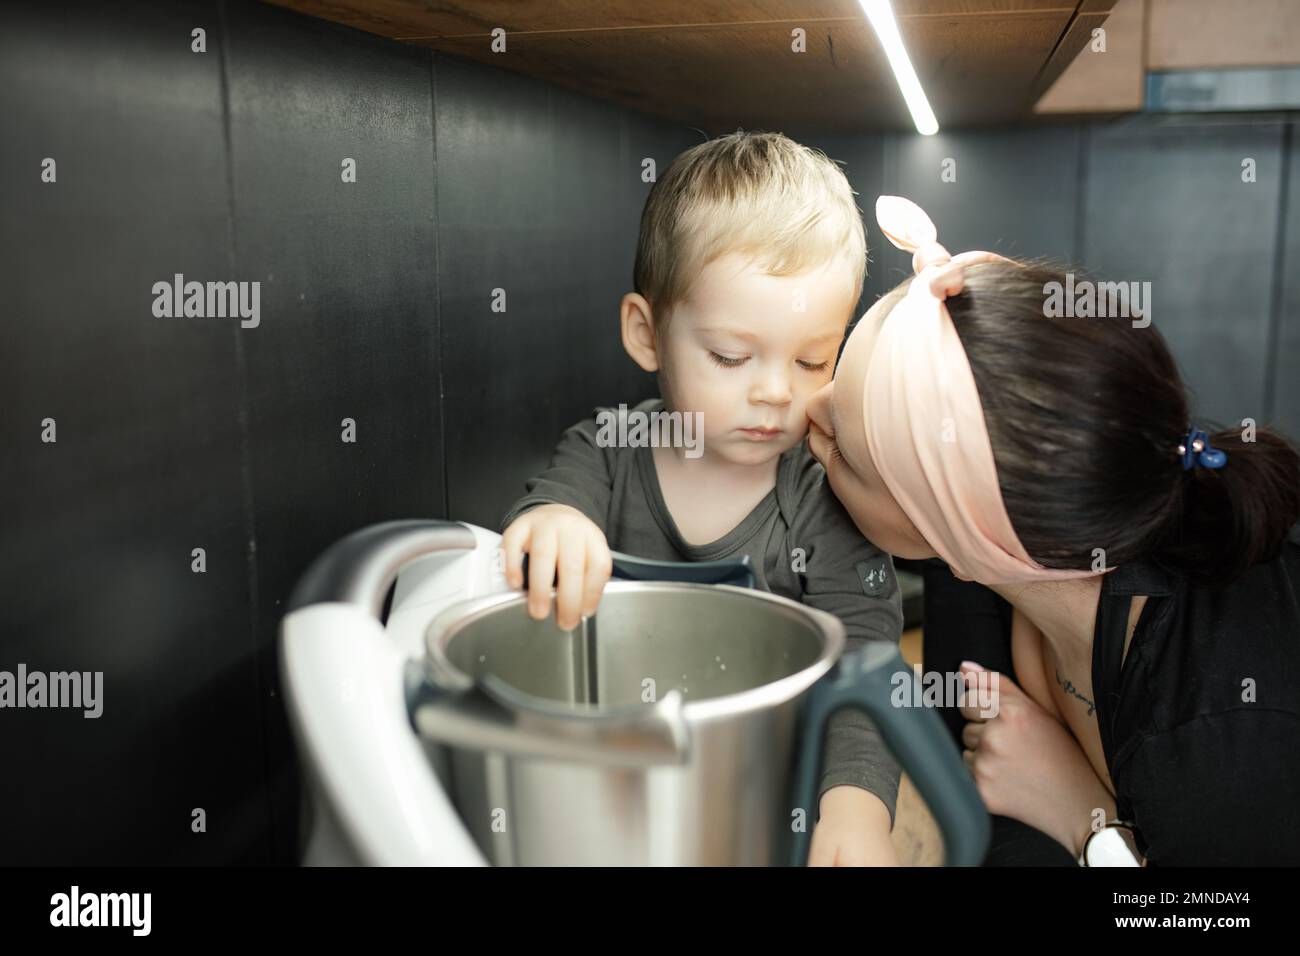 Mama mit Liebe küsst den kleinen Sohn auf die Wange. Baby, schau dir die tiefe Metallschale des Mixers an. Kleines Kind, hilf Mutter beim Kochen des Abendessens. Stockfoto